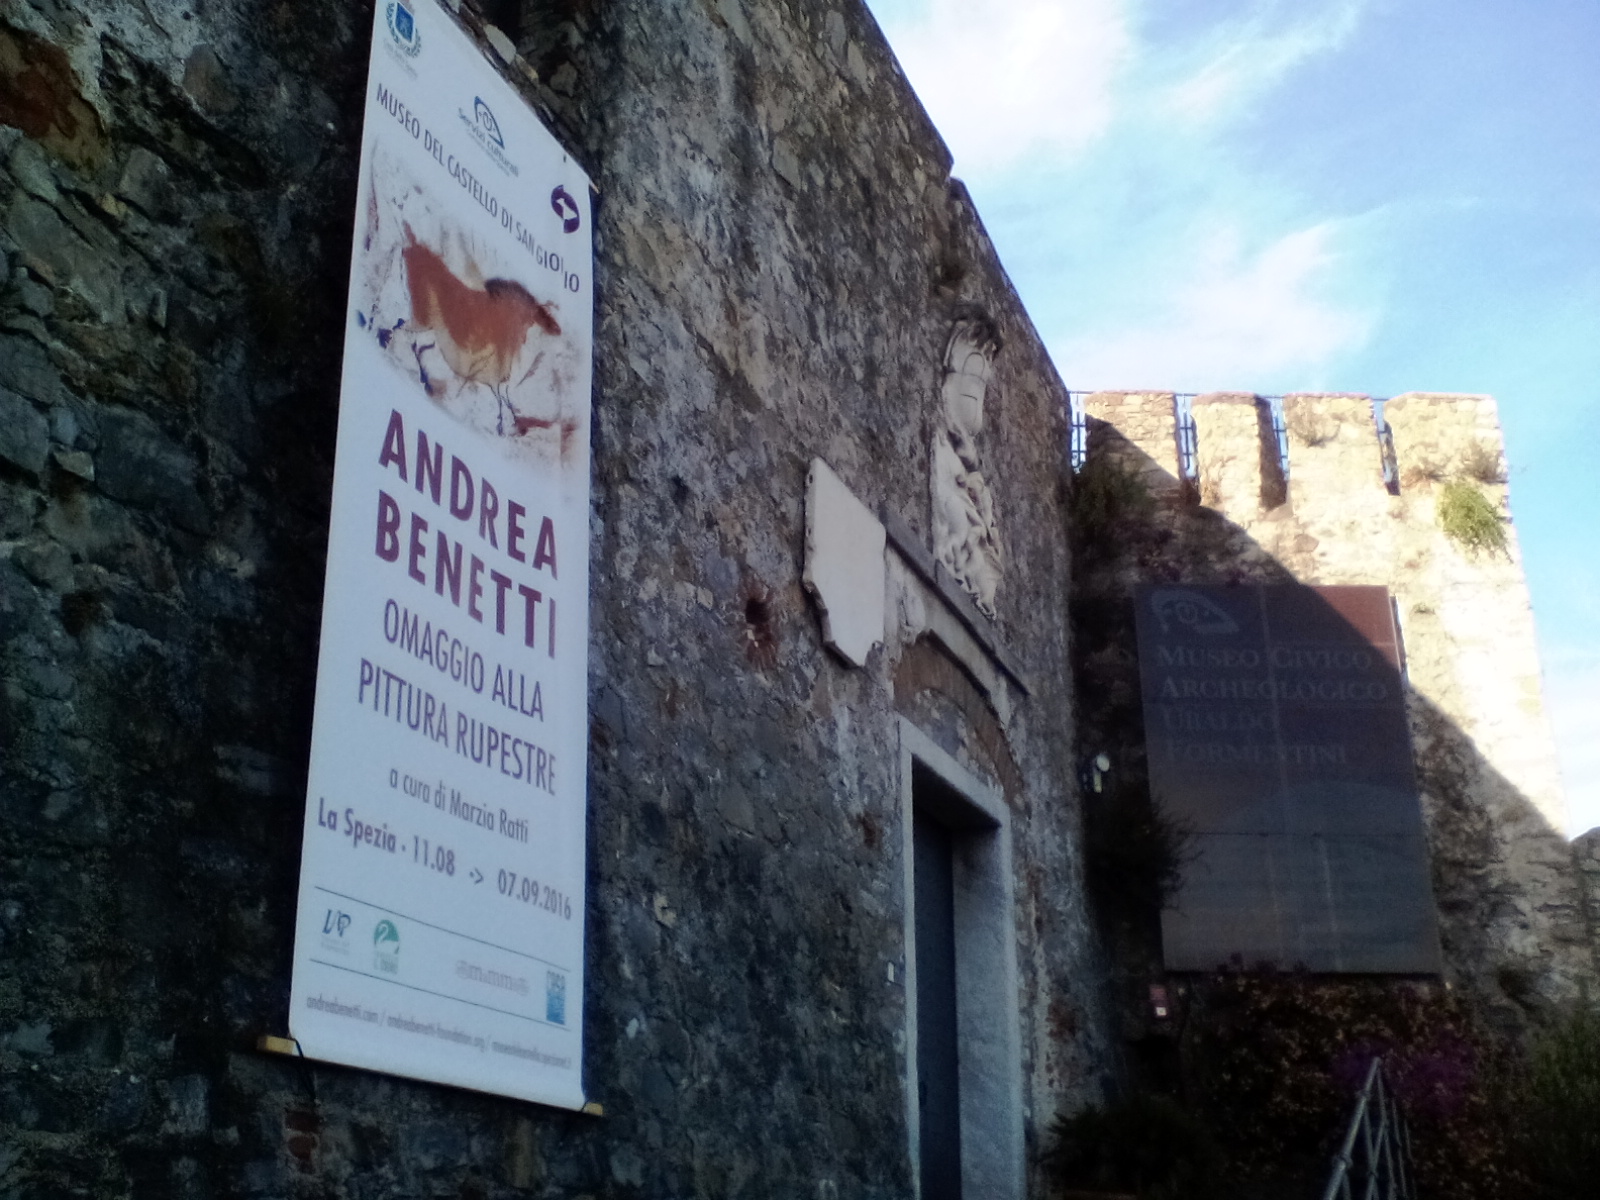 Museo Castello San Giorgio - La Spezia - La mostra di Andrea Benetti